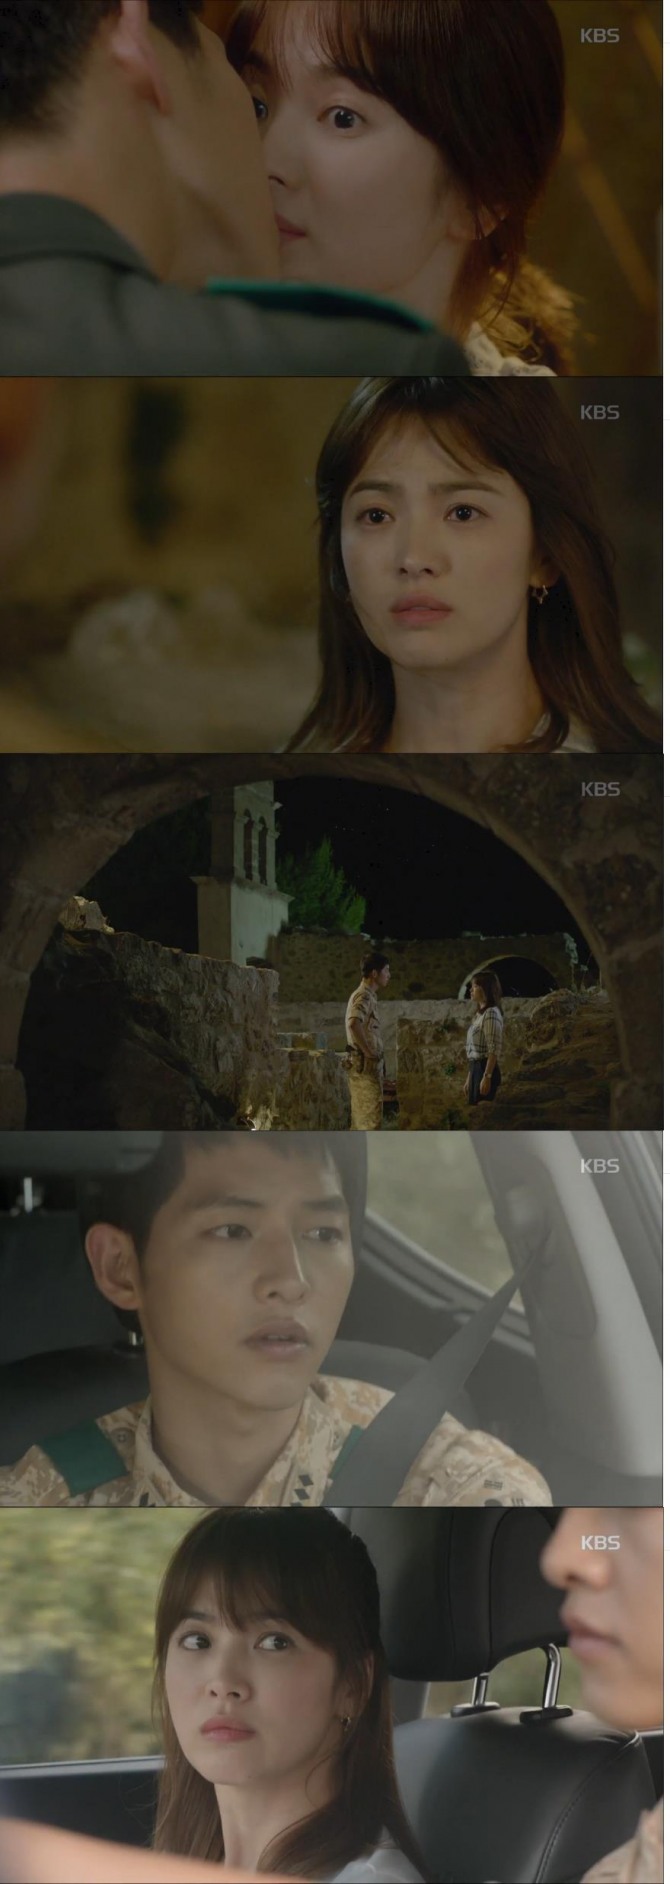 9일 방송된 KBS2 수목드라마 '태양의 후예'에서 유시진(송중기)의 기습 키스를 받은 강모연(송혜교)이 화를 내며 두 사람 사이에 싸늘한 냉전이 감돌았다./사진=KBS 방송 캡처